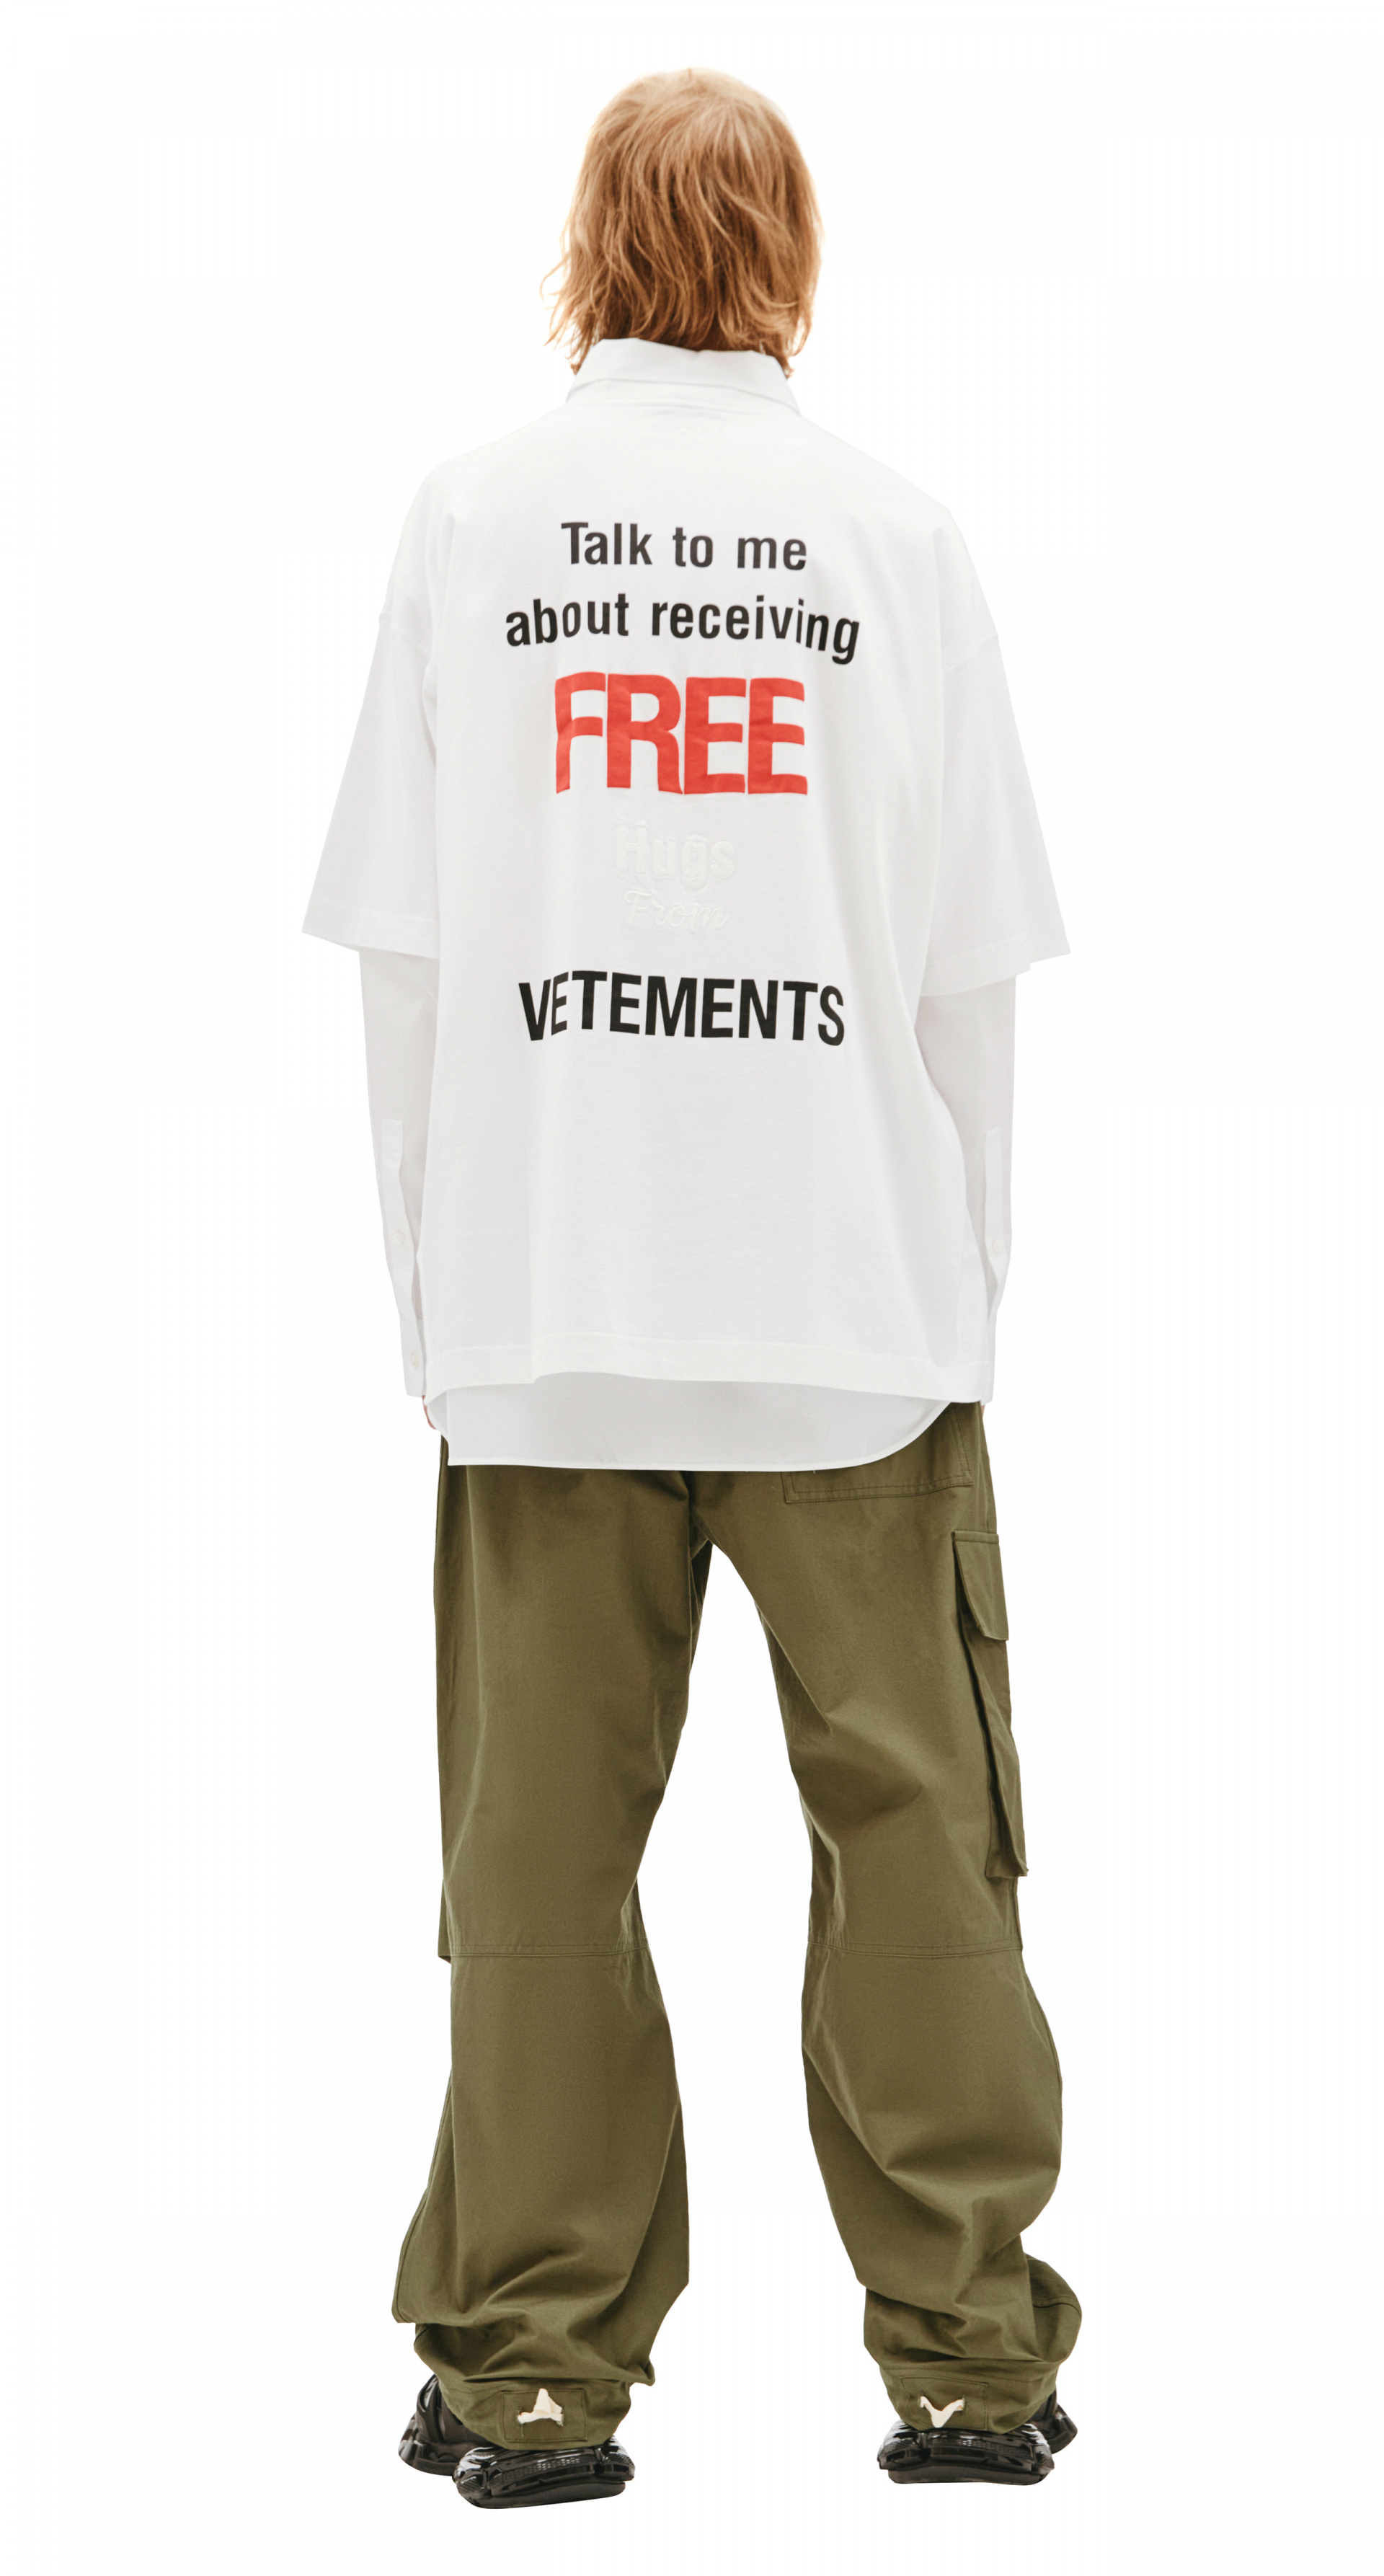 Buy VETEMENTS men white printed t-shirt for $320 online on SV77 